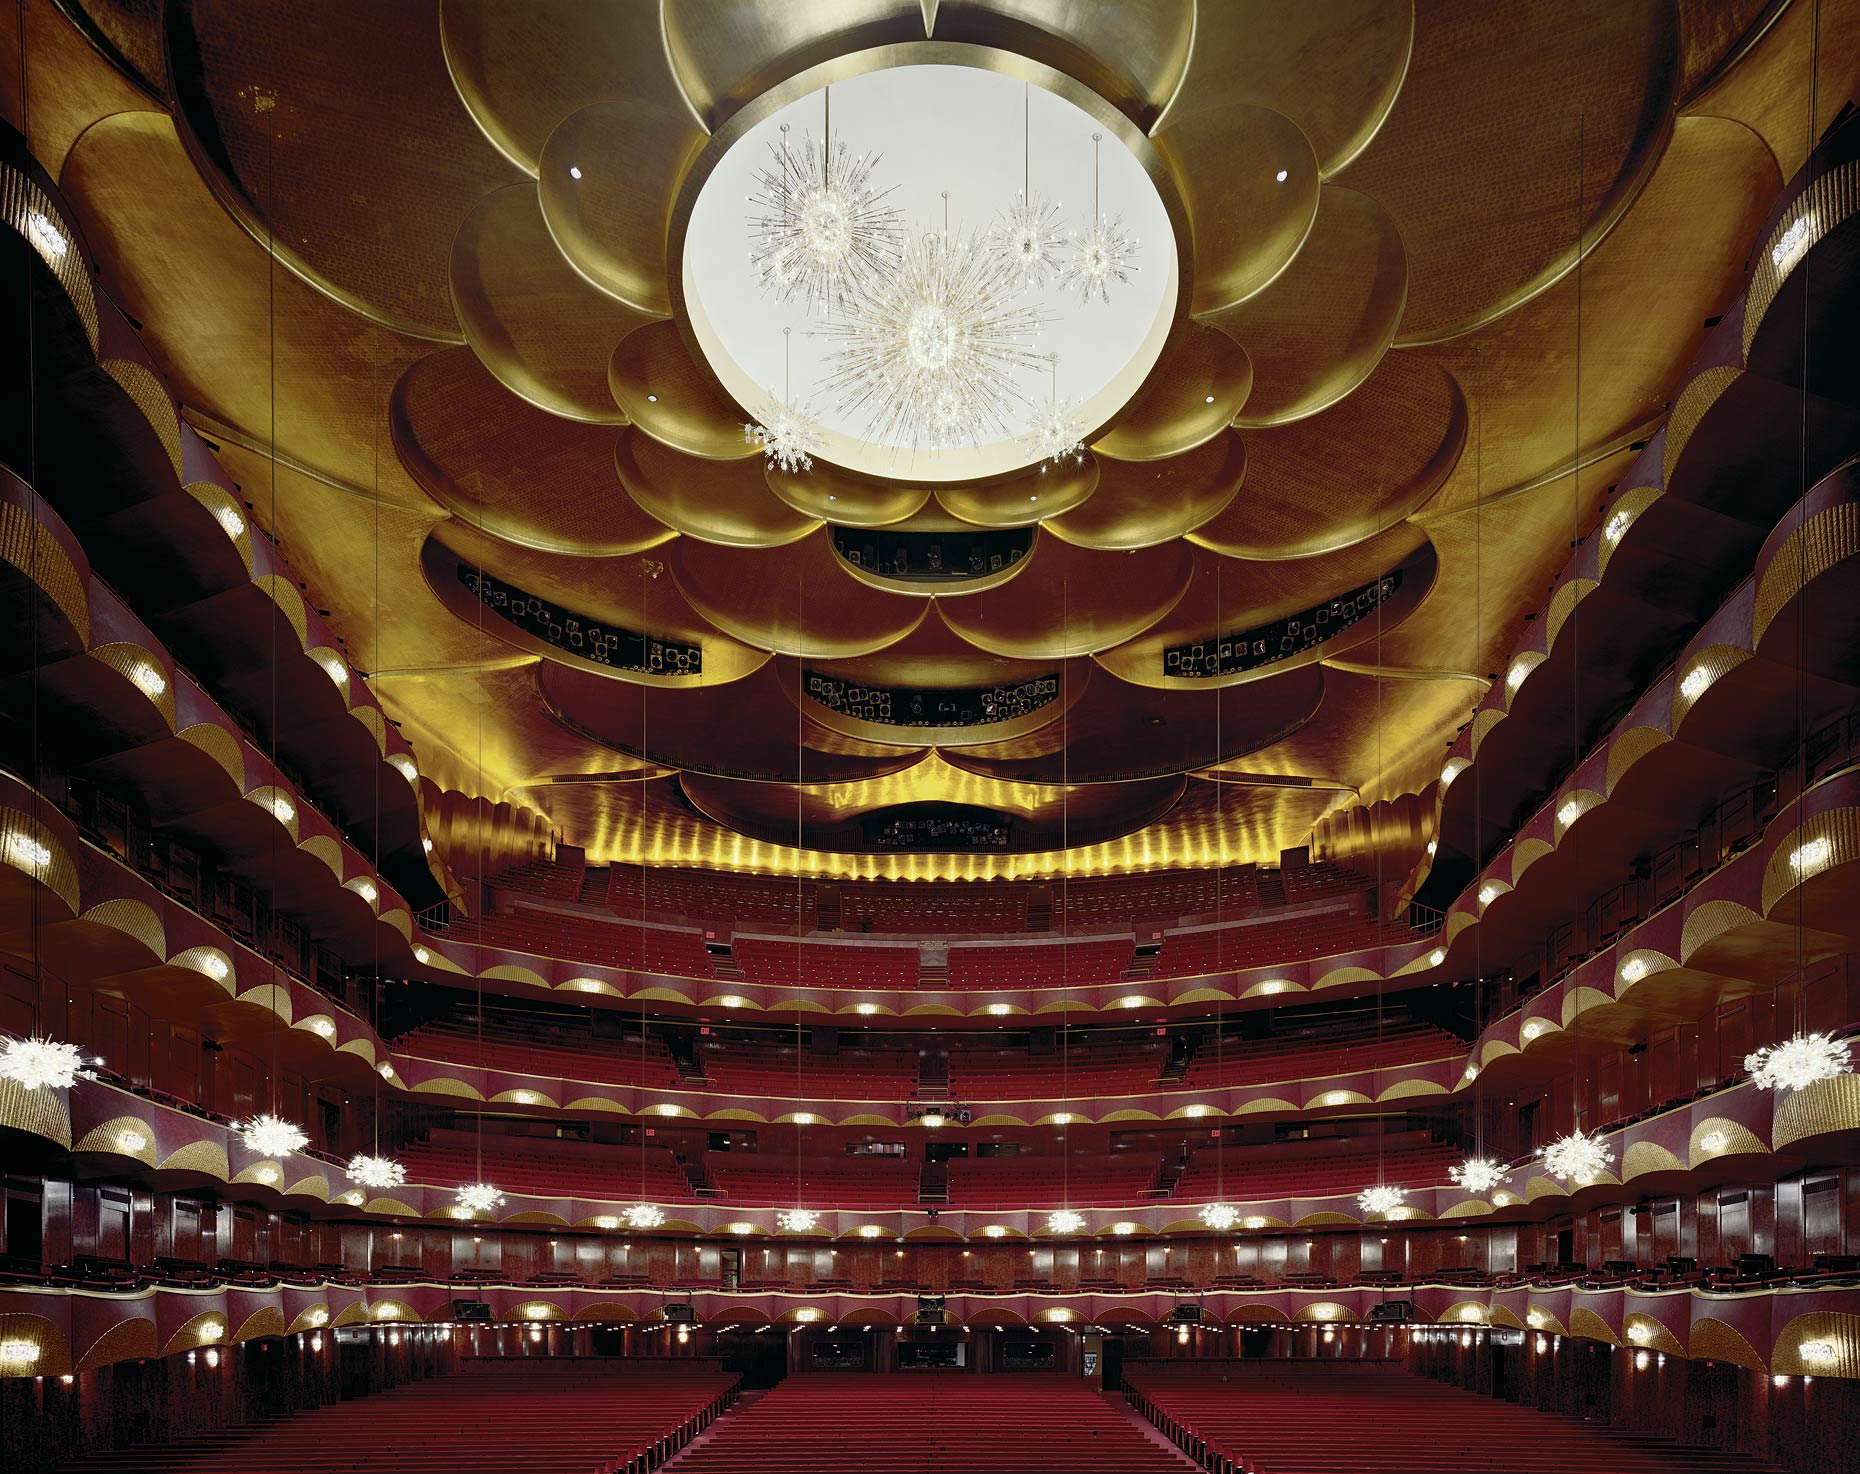 The Metropolitan Opera, New York, United States, 2008